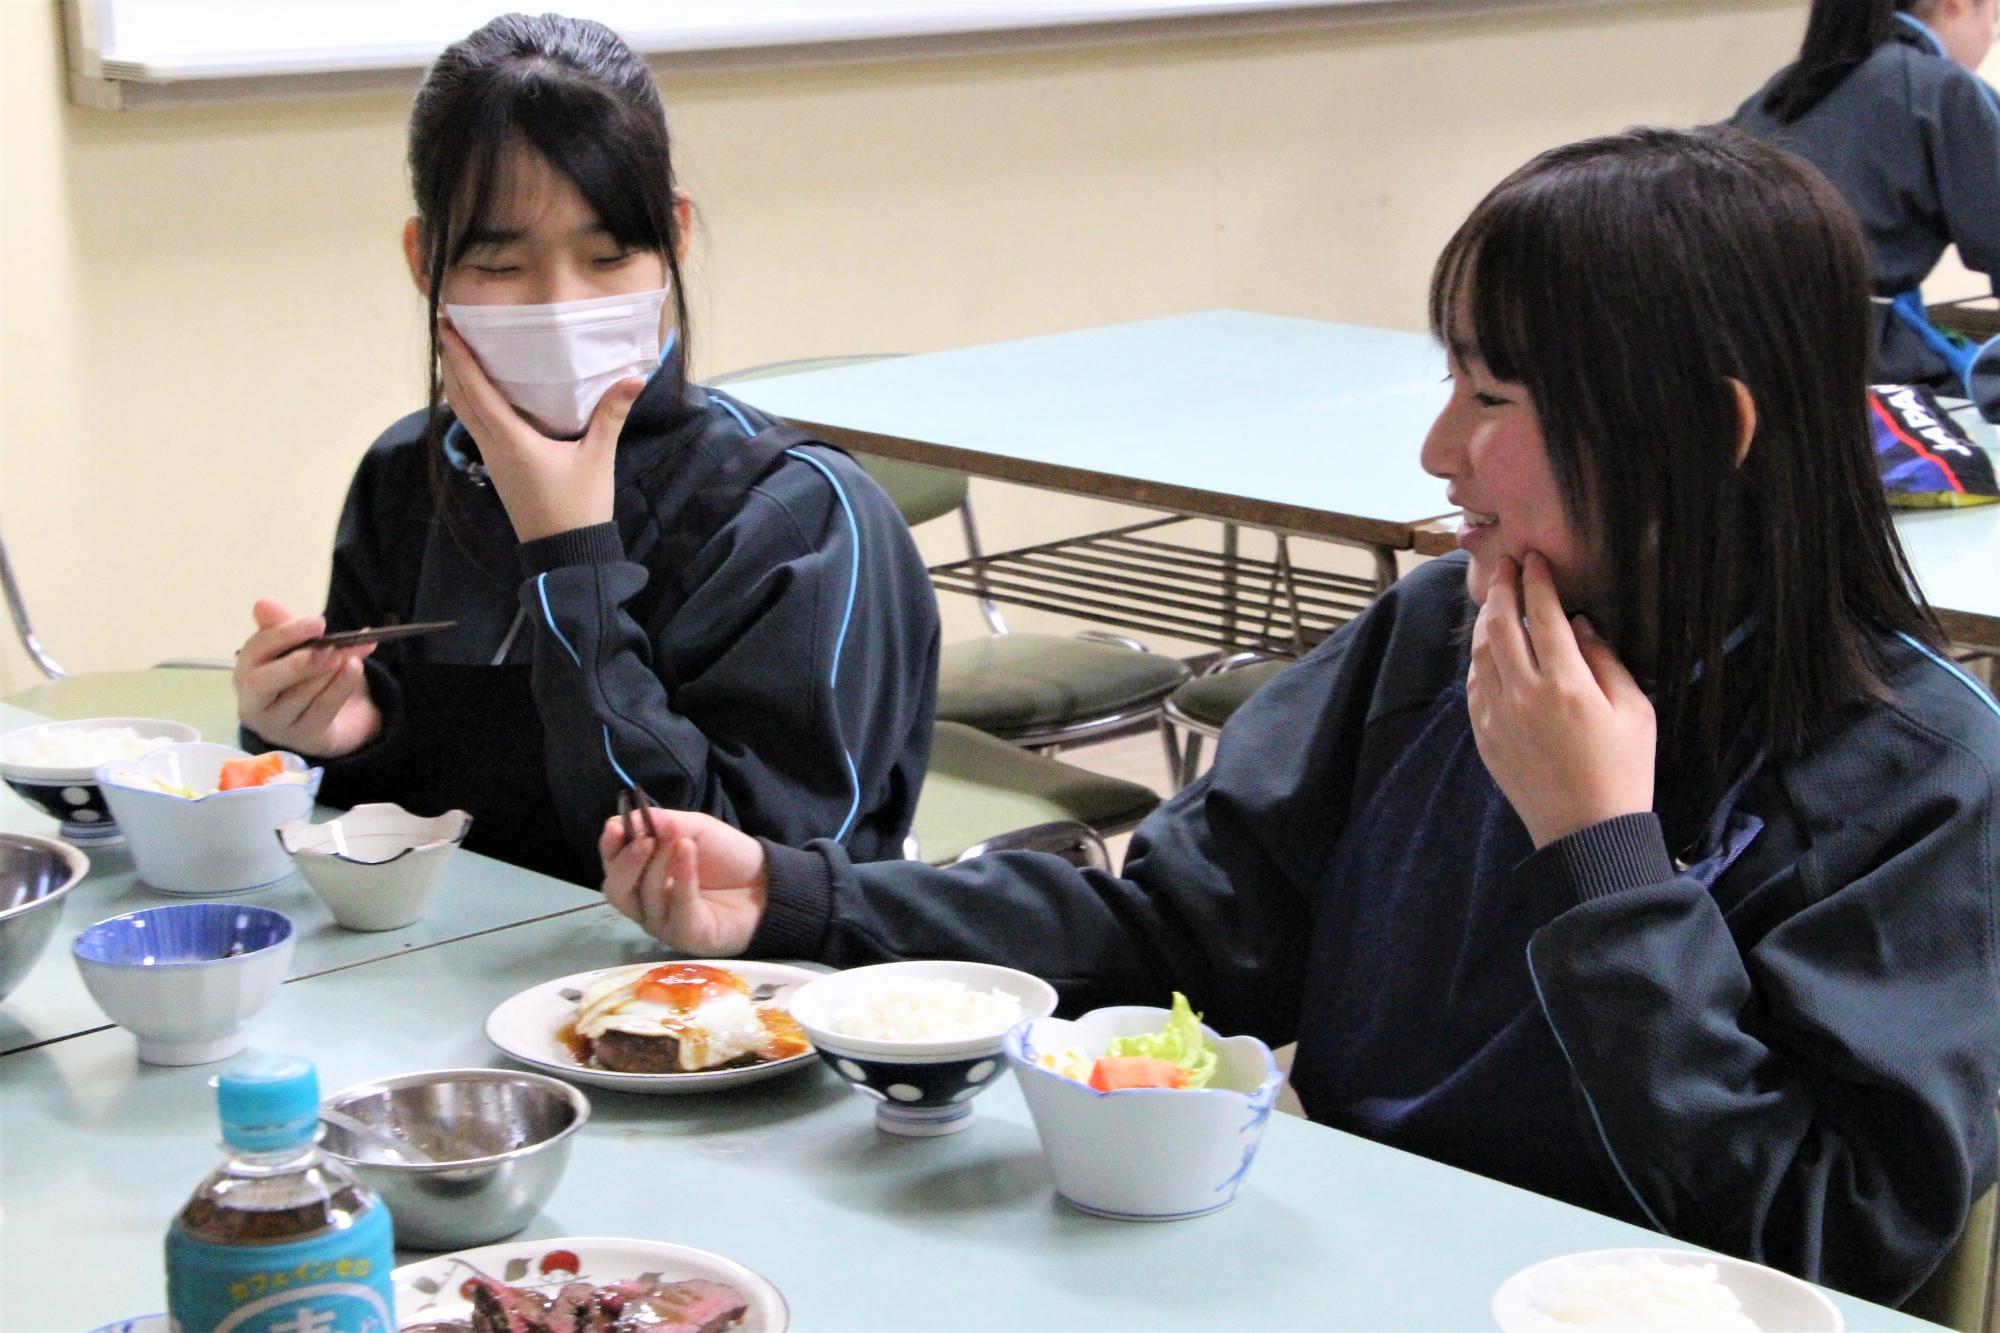 出来上がったジビエと発酵食品の料理を実食する生徒の写真